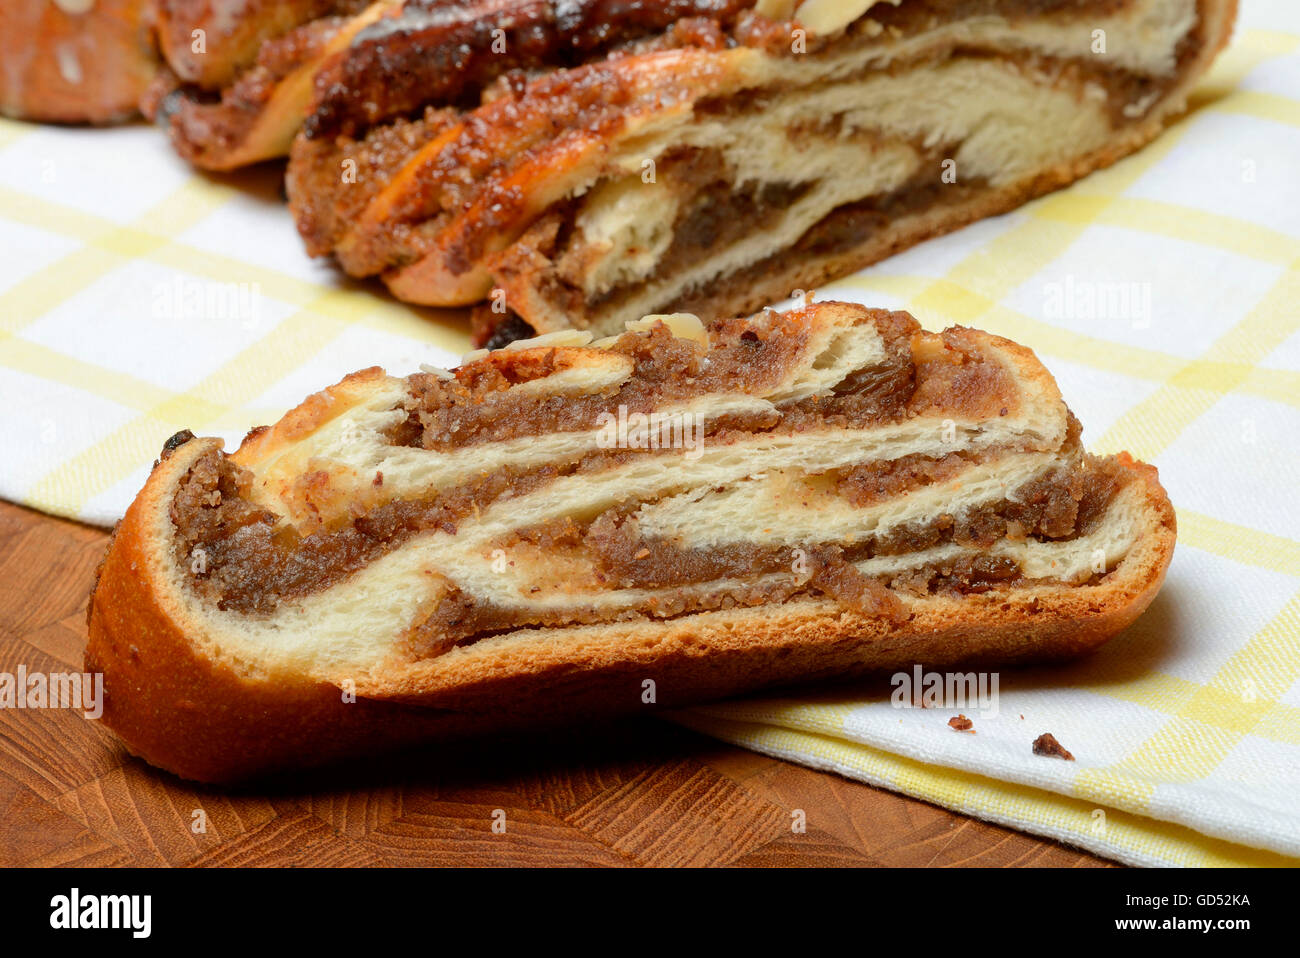 Intrecciati bun di lievito, lievito intrecciato bun, dolce pane di lievito Foto Stock